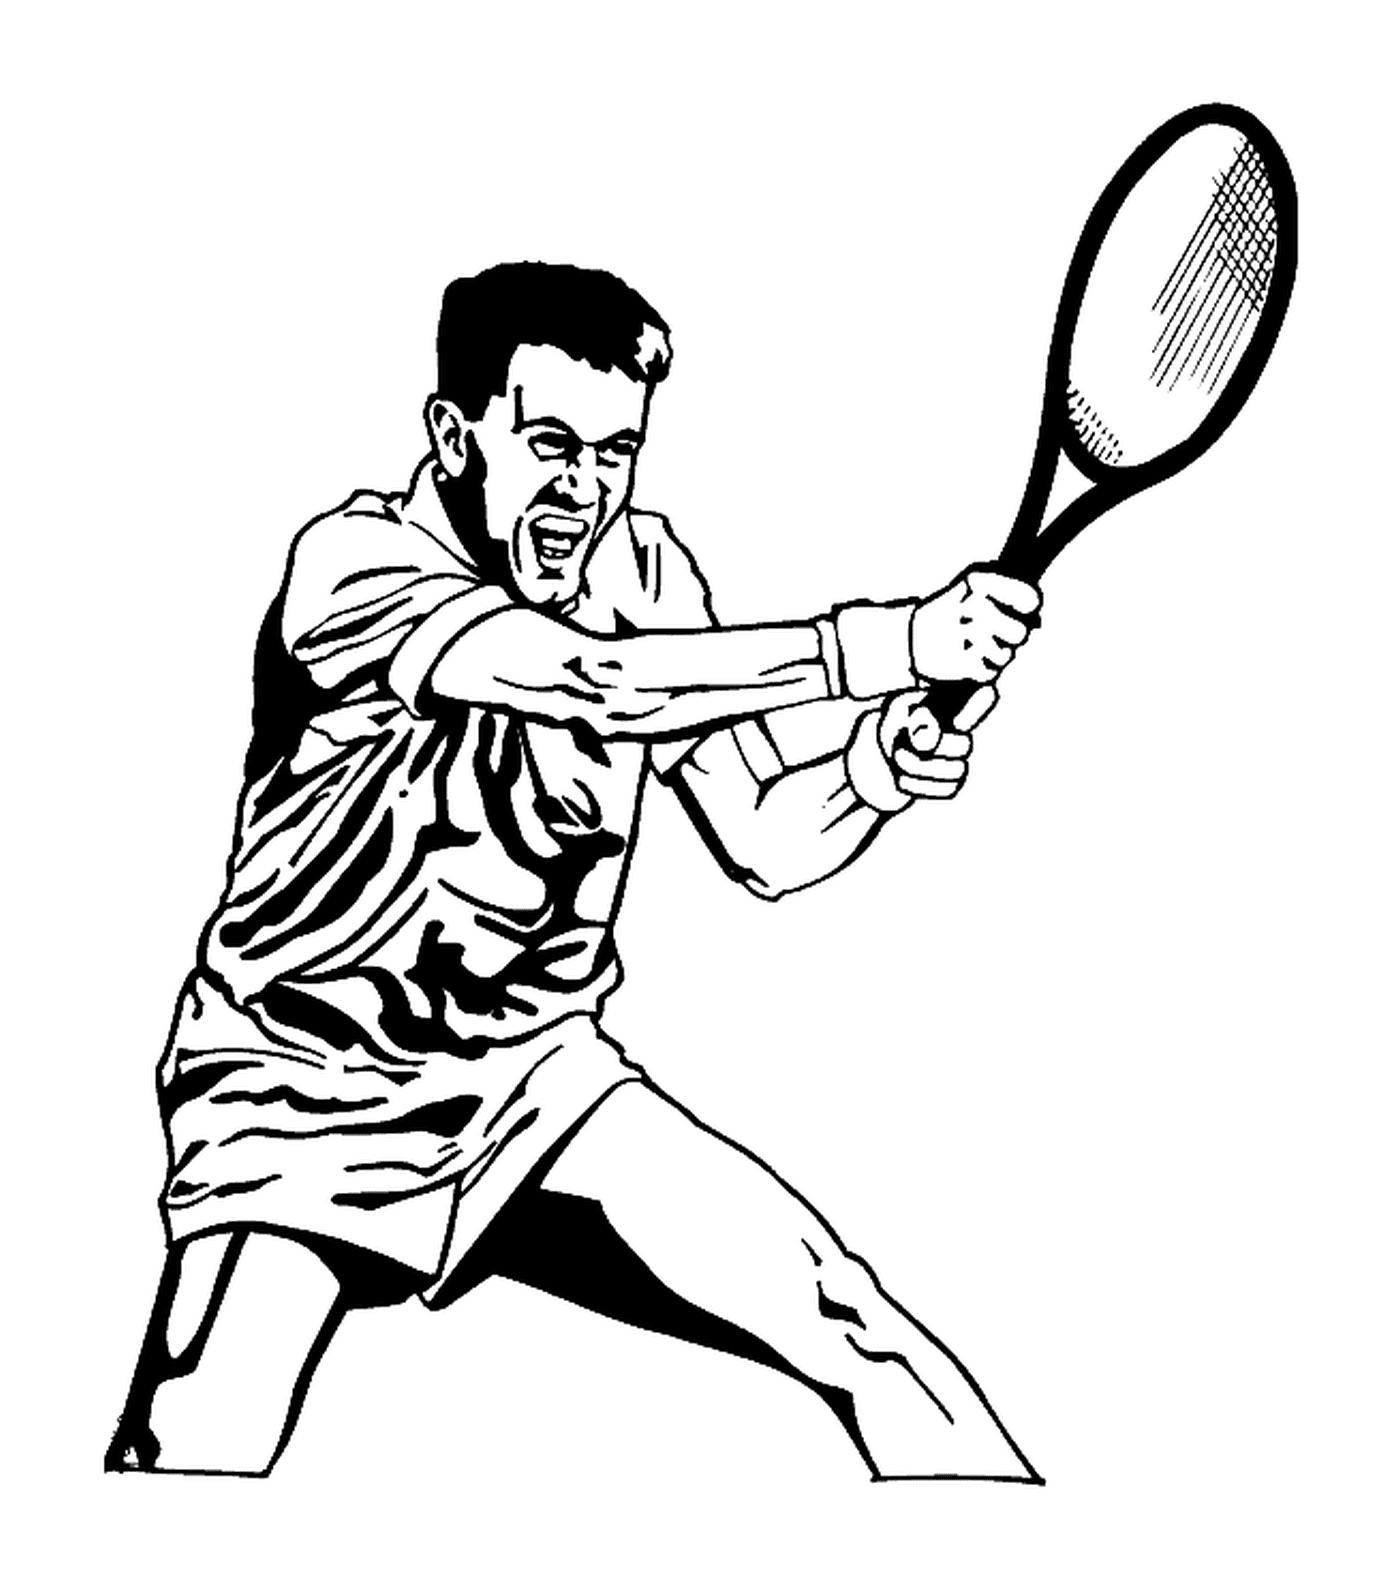   Un joueur de tennis en action 